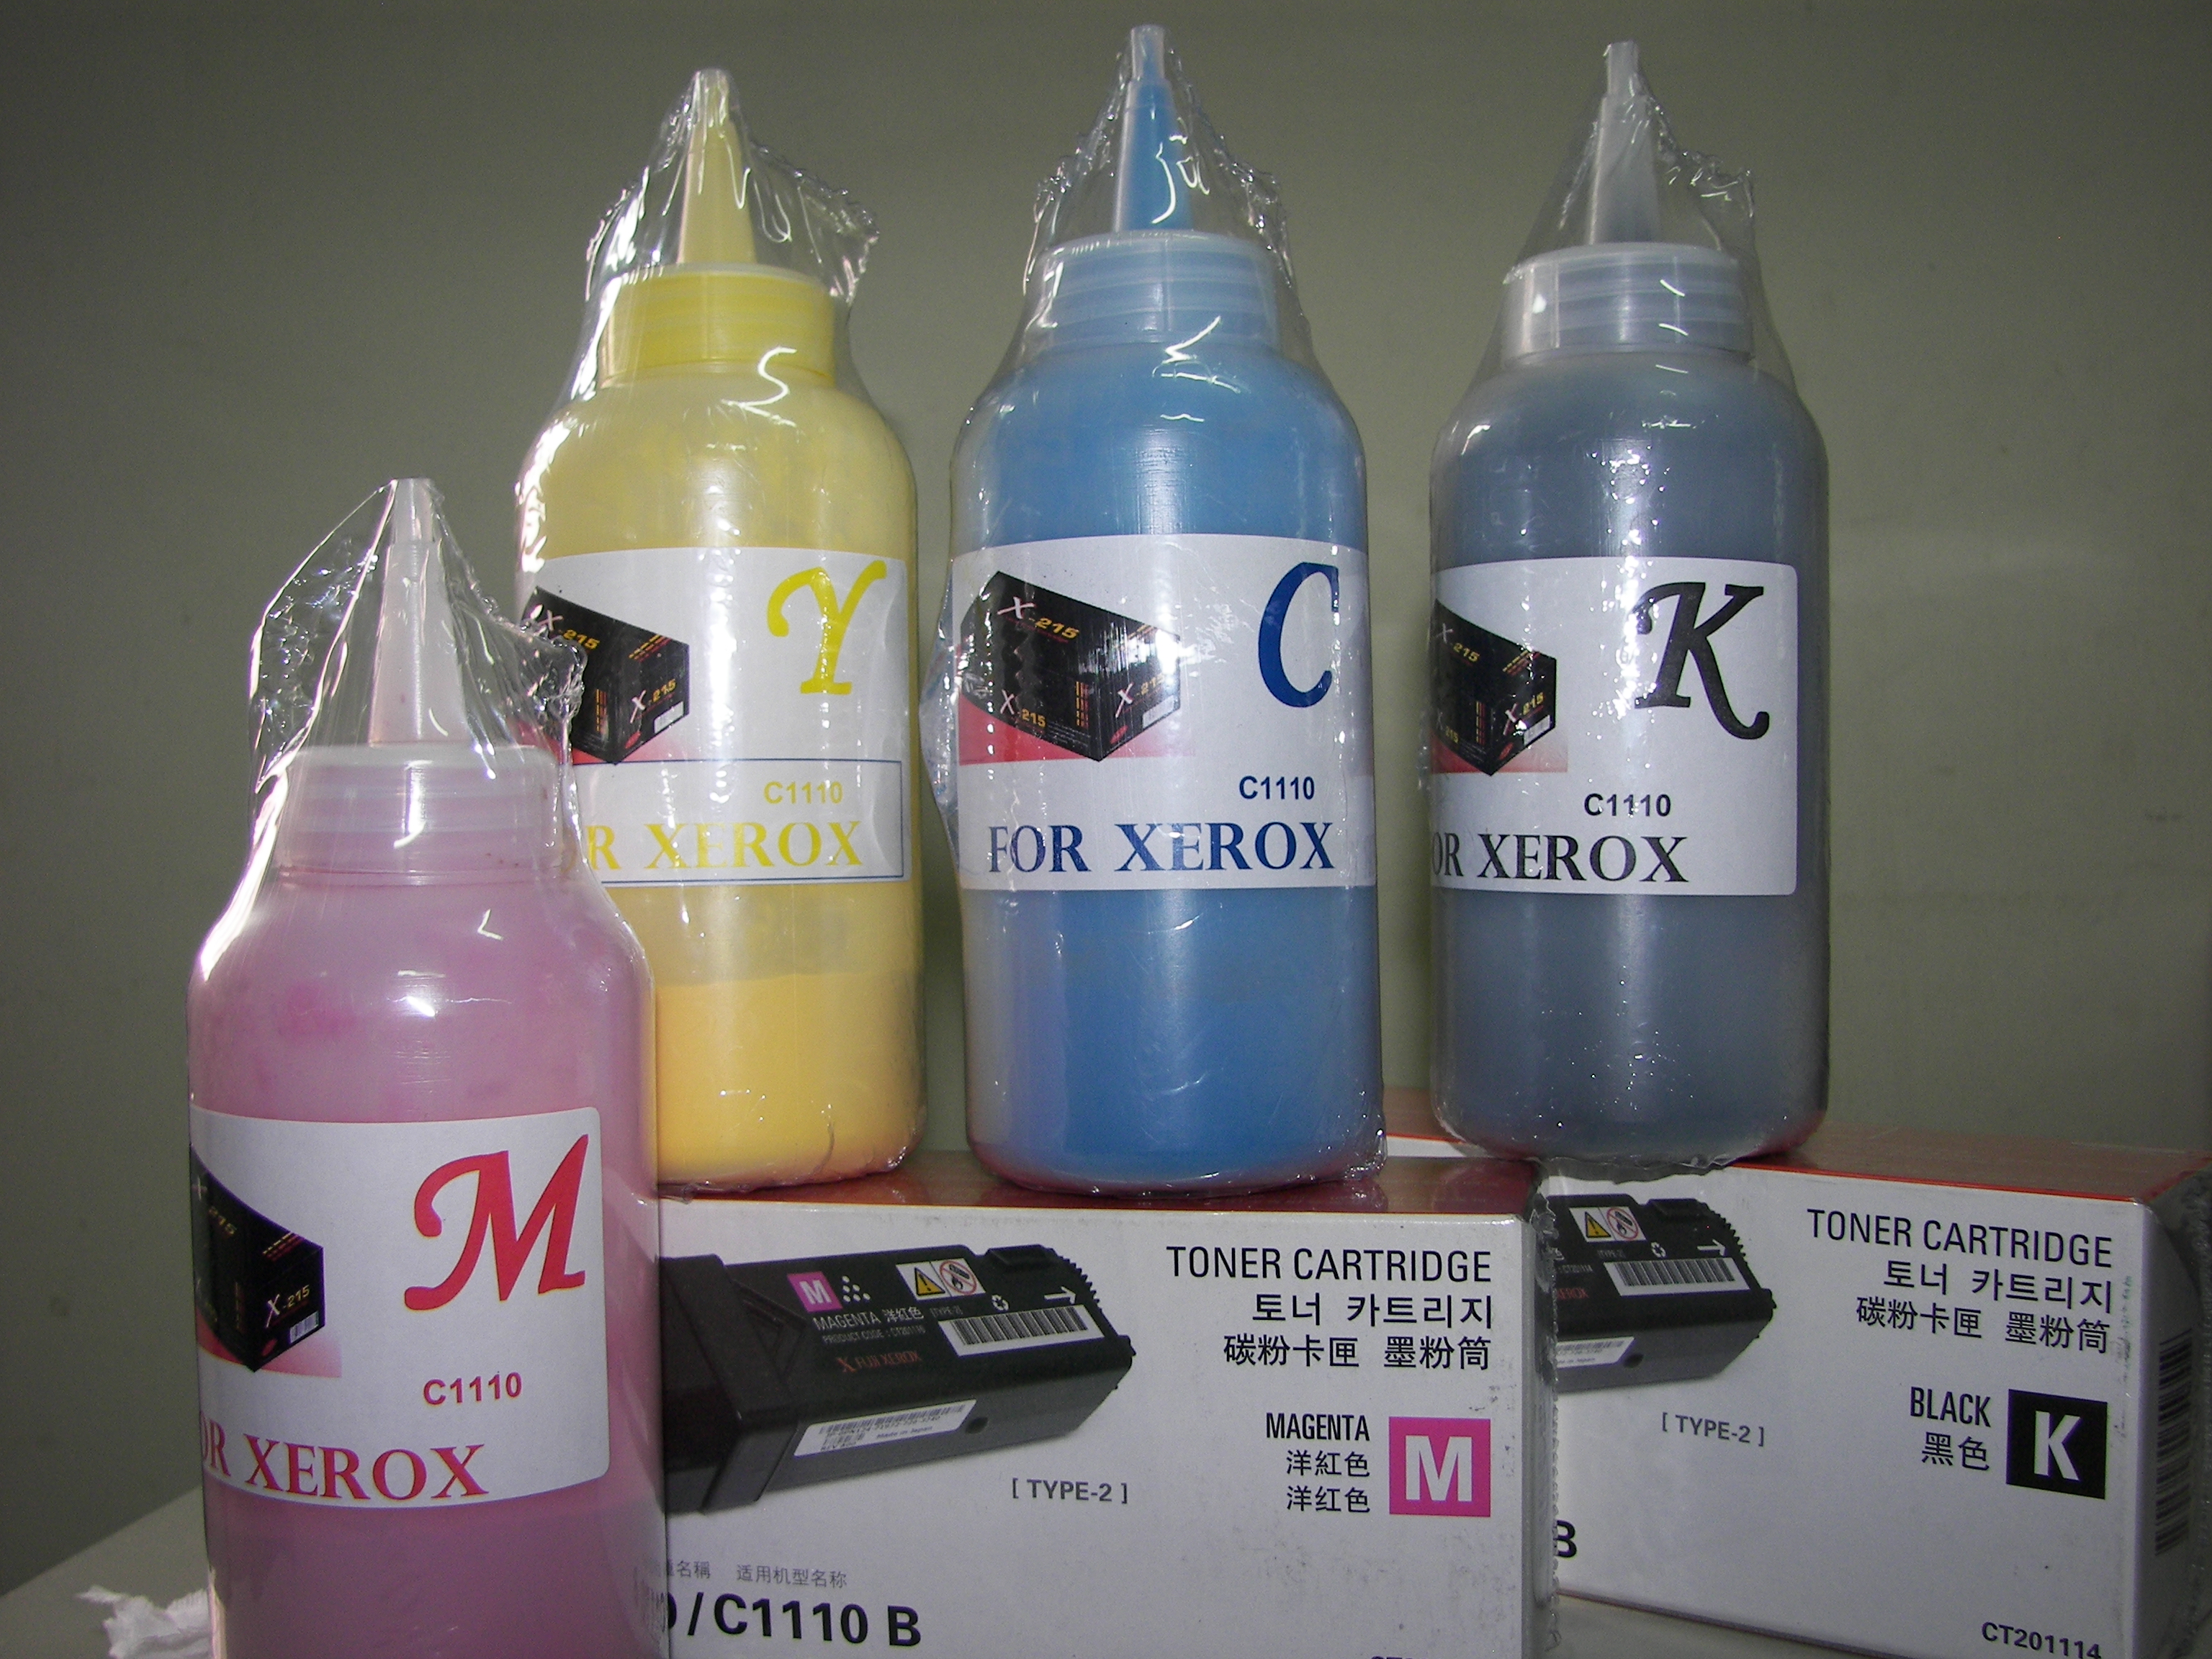 หมึกเติมคุณภาพสำหรับ  XEROX C1110 /C1110B  พร้อมชิพ สี YELLOW